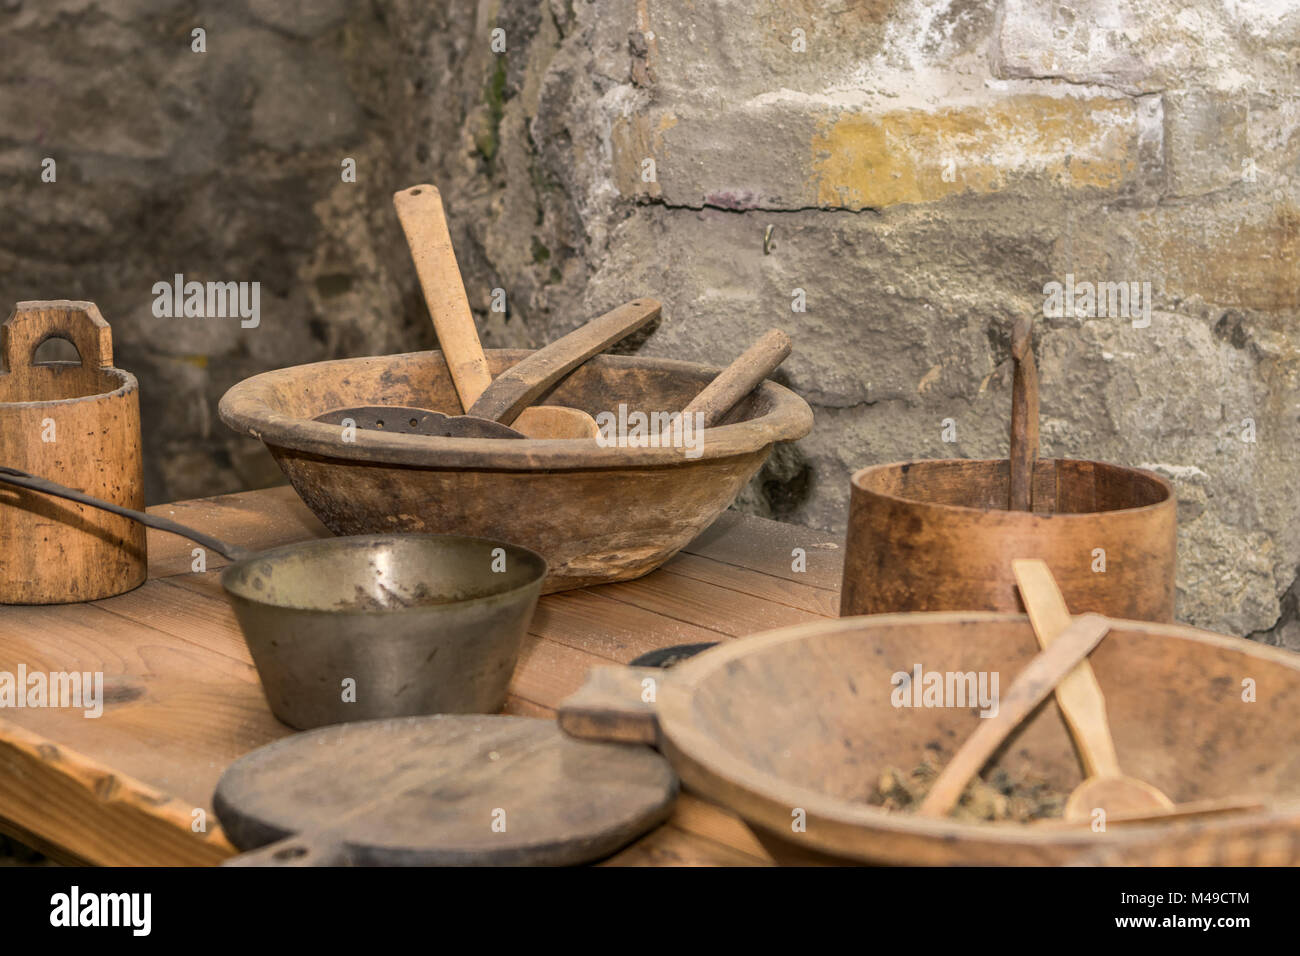 Cocina medieval con herramientas, cestas, escala, chimenea Foto de stock